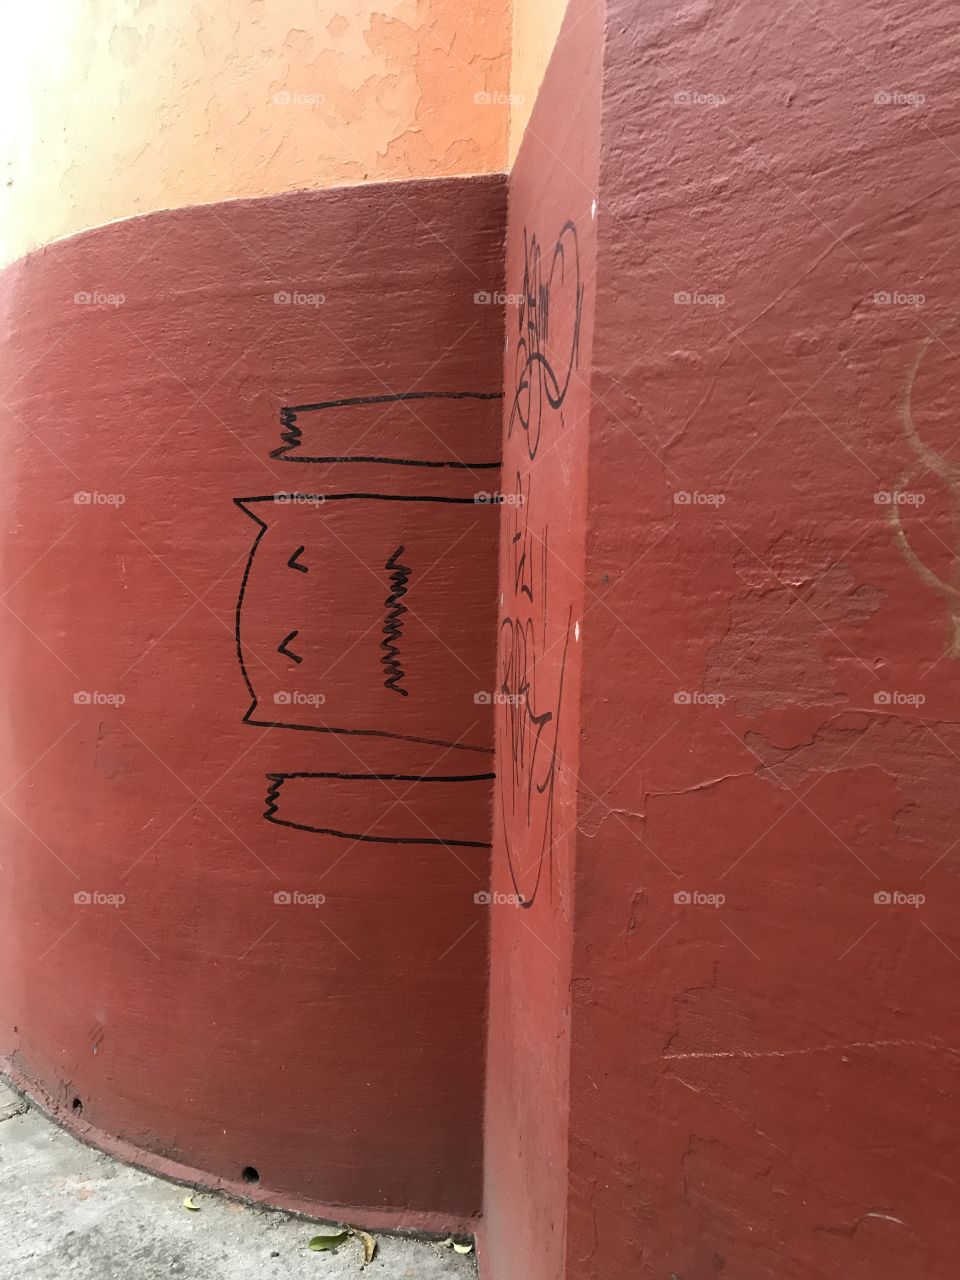 Graffiti funny monster 